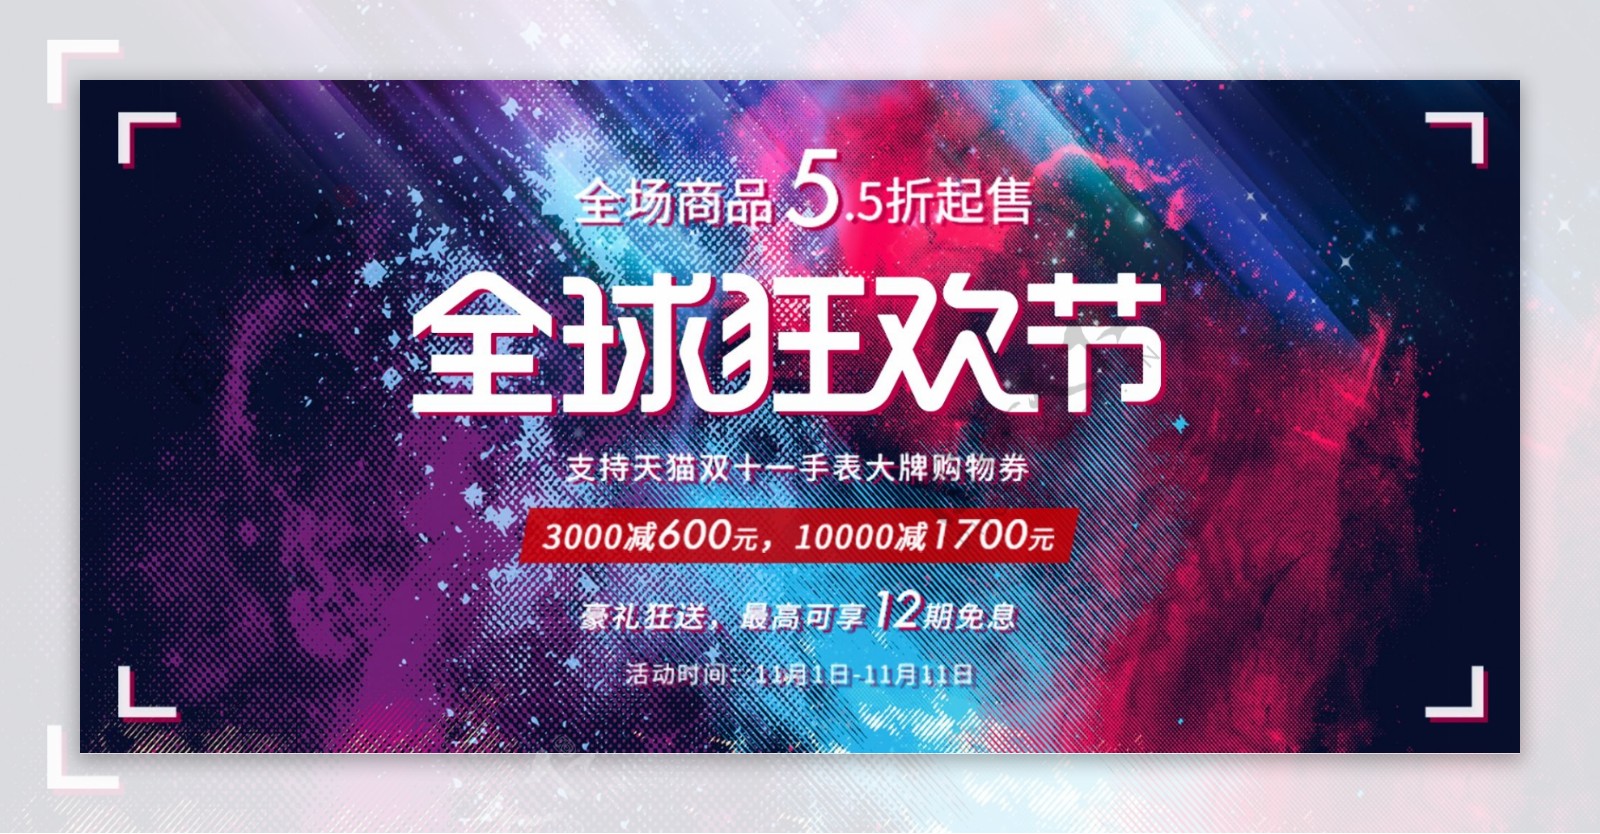 双11海报炫酷喷溅时尚活动banner